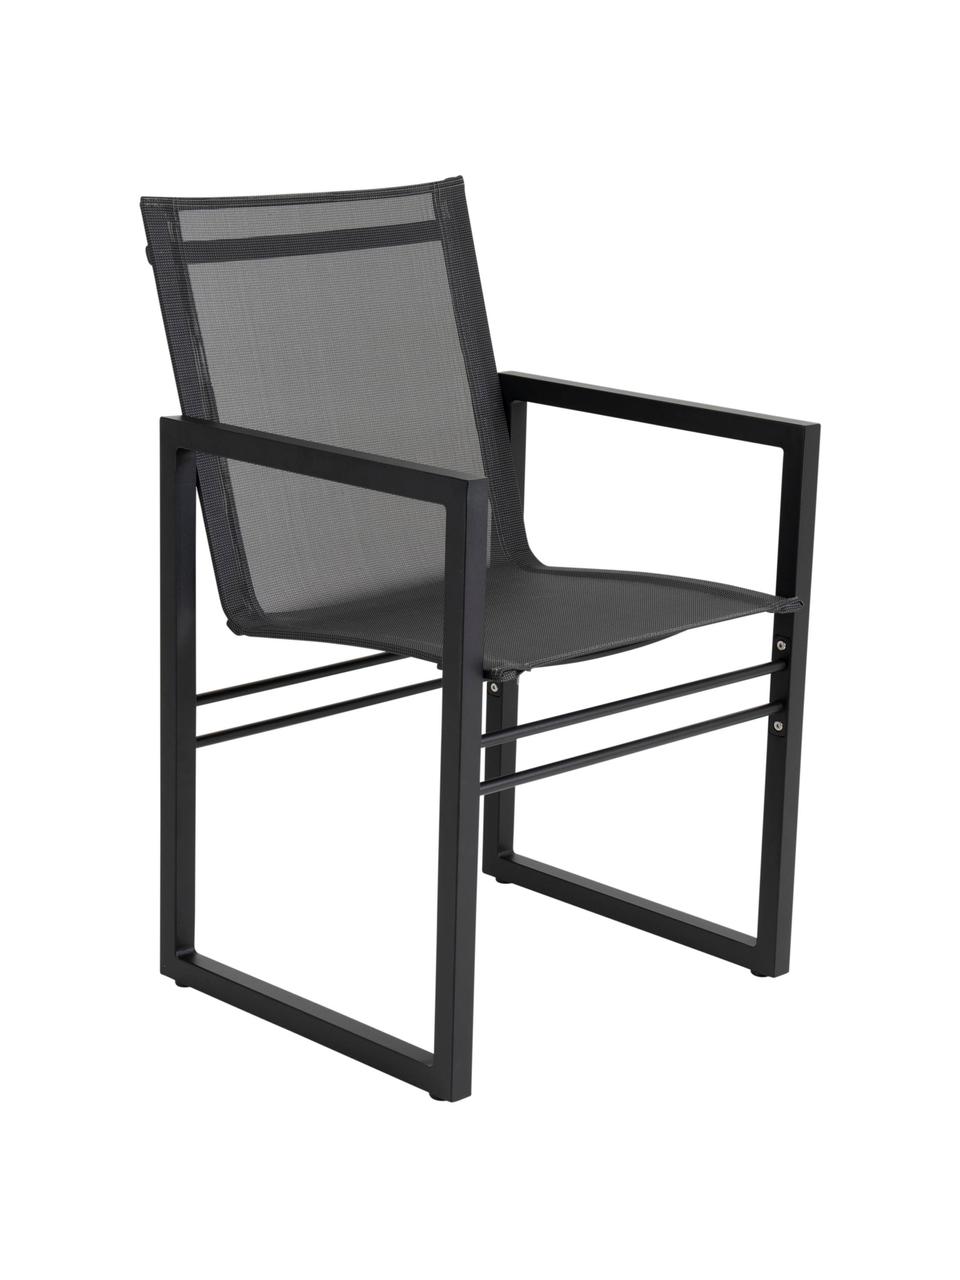 Zahradní židle Vevi, Černá, Š 57 cm, H 54 cm